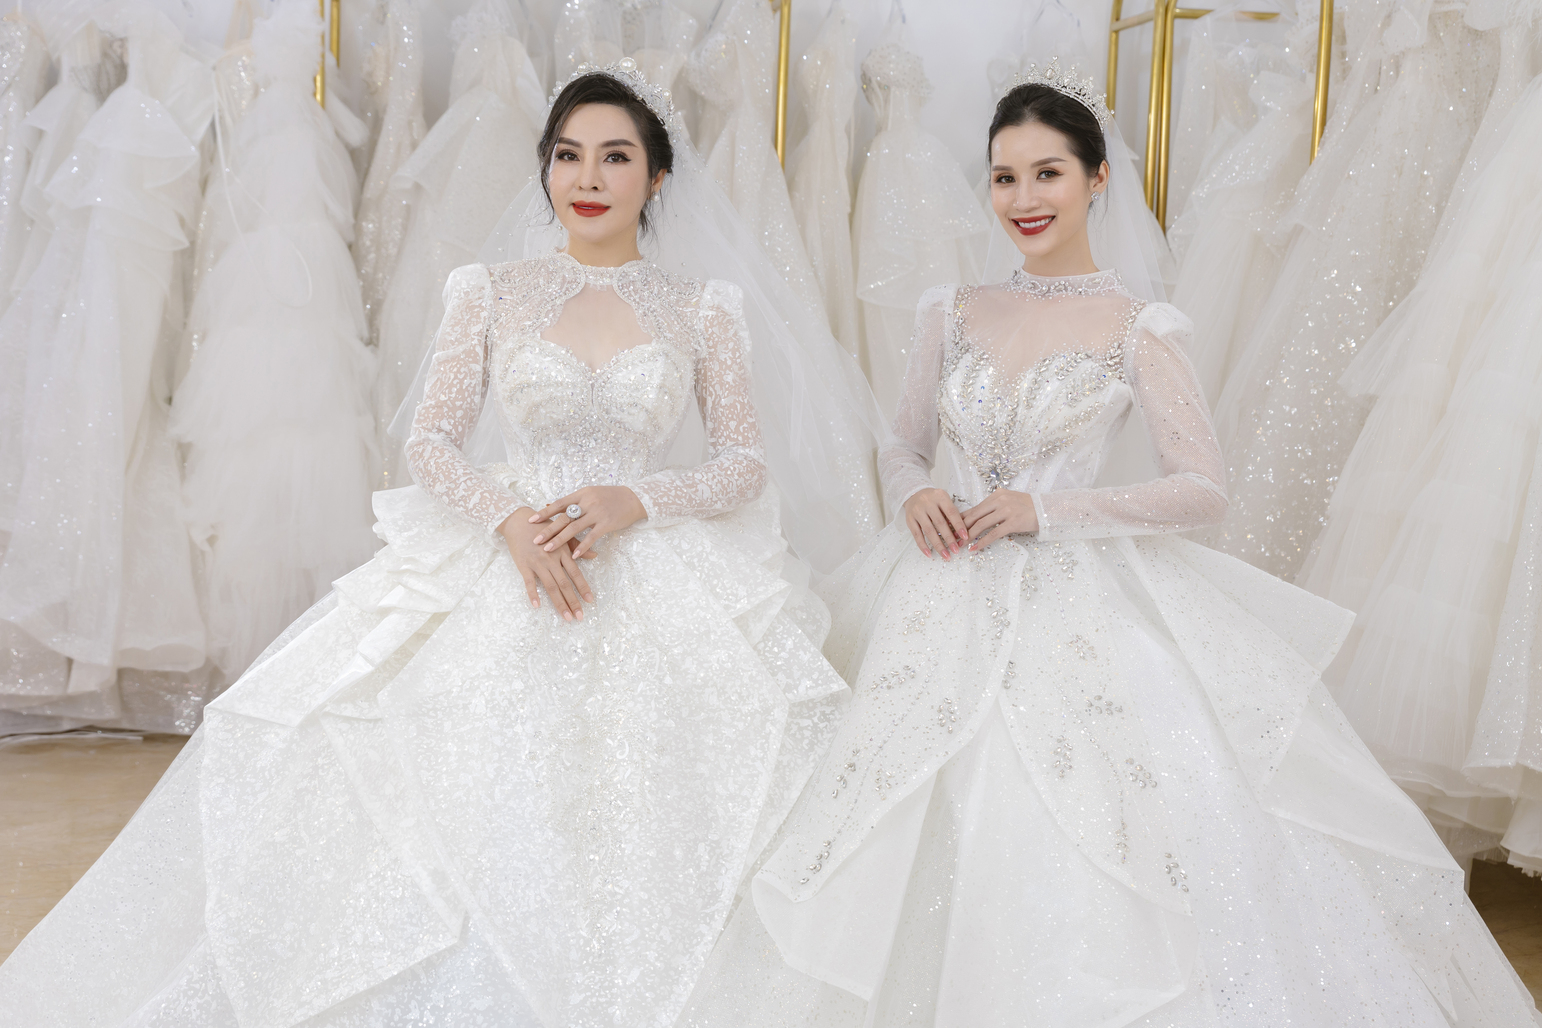 3 studio chụp hình cưới đẹp và uy tín tại thành phố Hồ Chí Minh